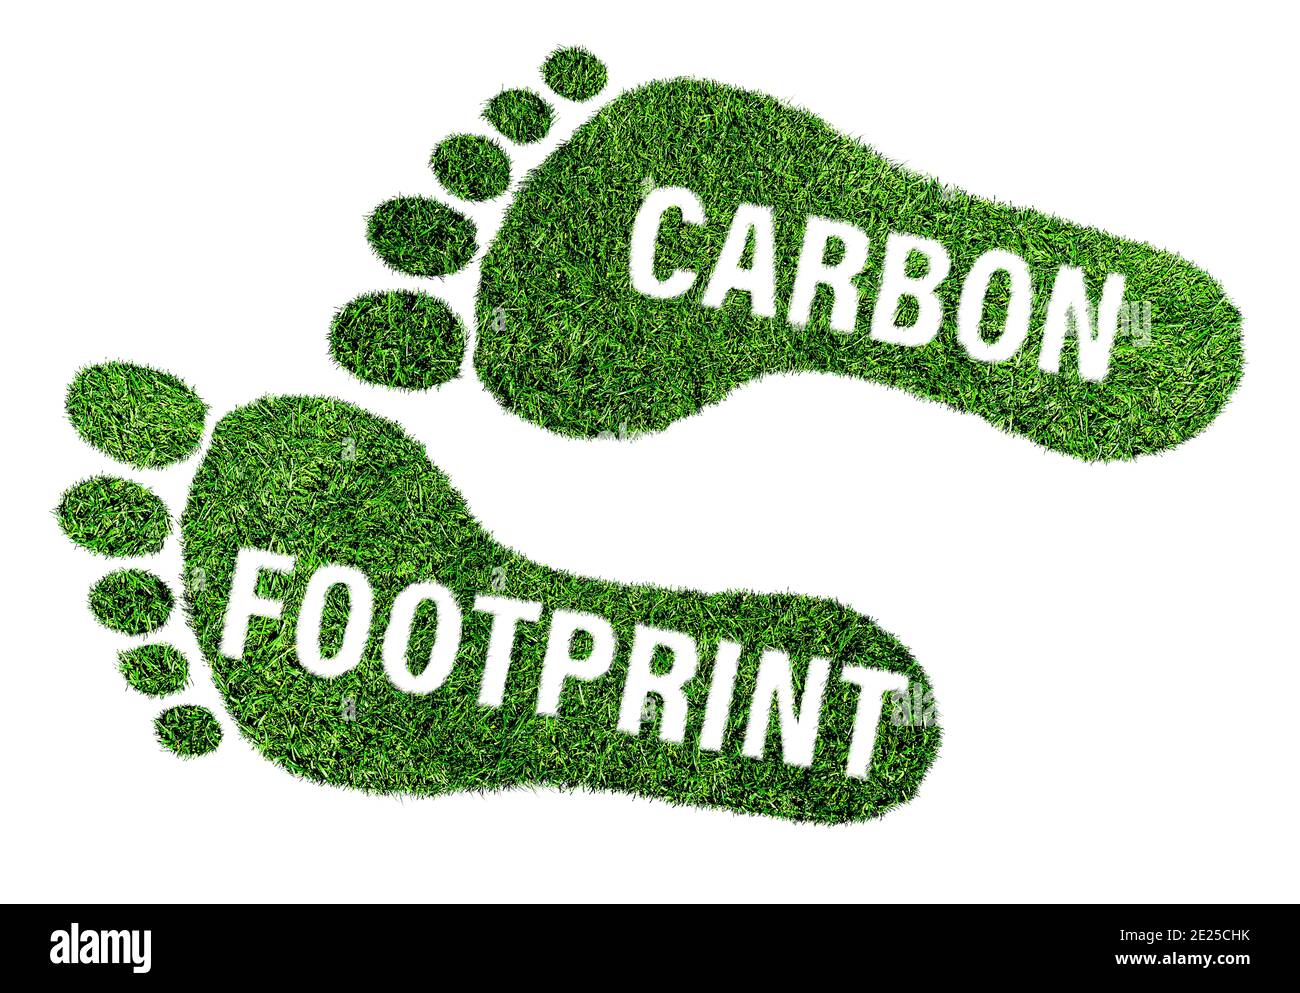 concept d'empreinte carbone, empreinte pieds nus en herbe verte luxuriante avec texte isolé sur fond blanc Banque D'Images